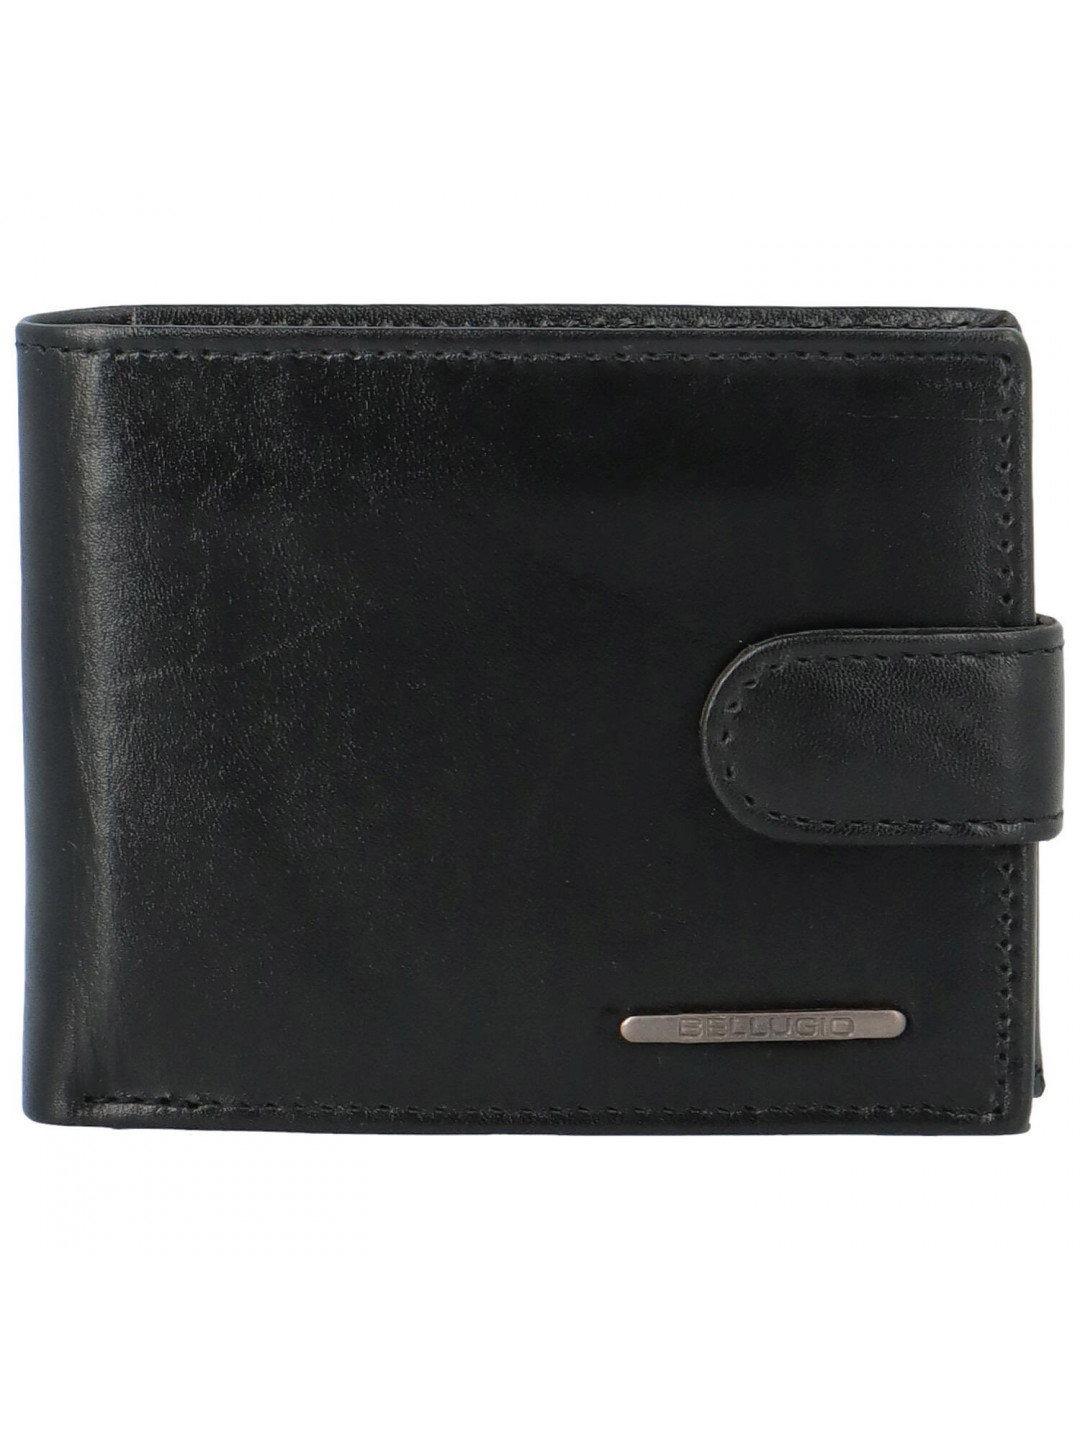 Pánská kožená peněženka na šířku Bellugio Oscar černá